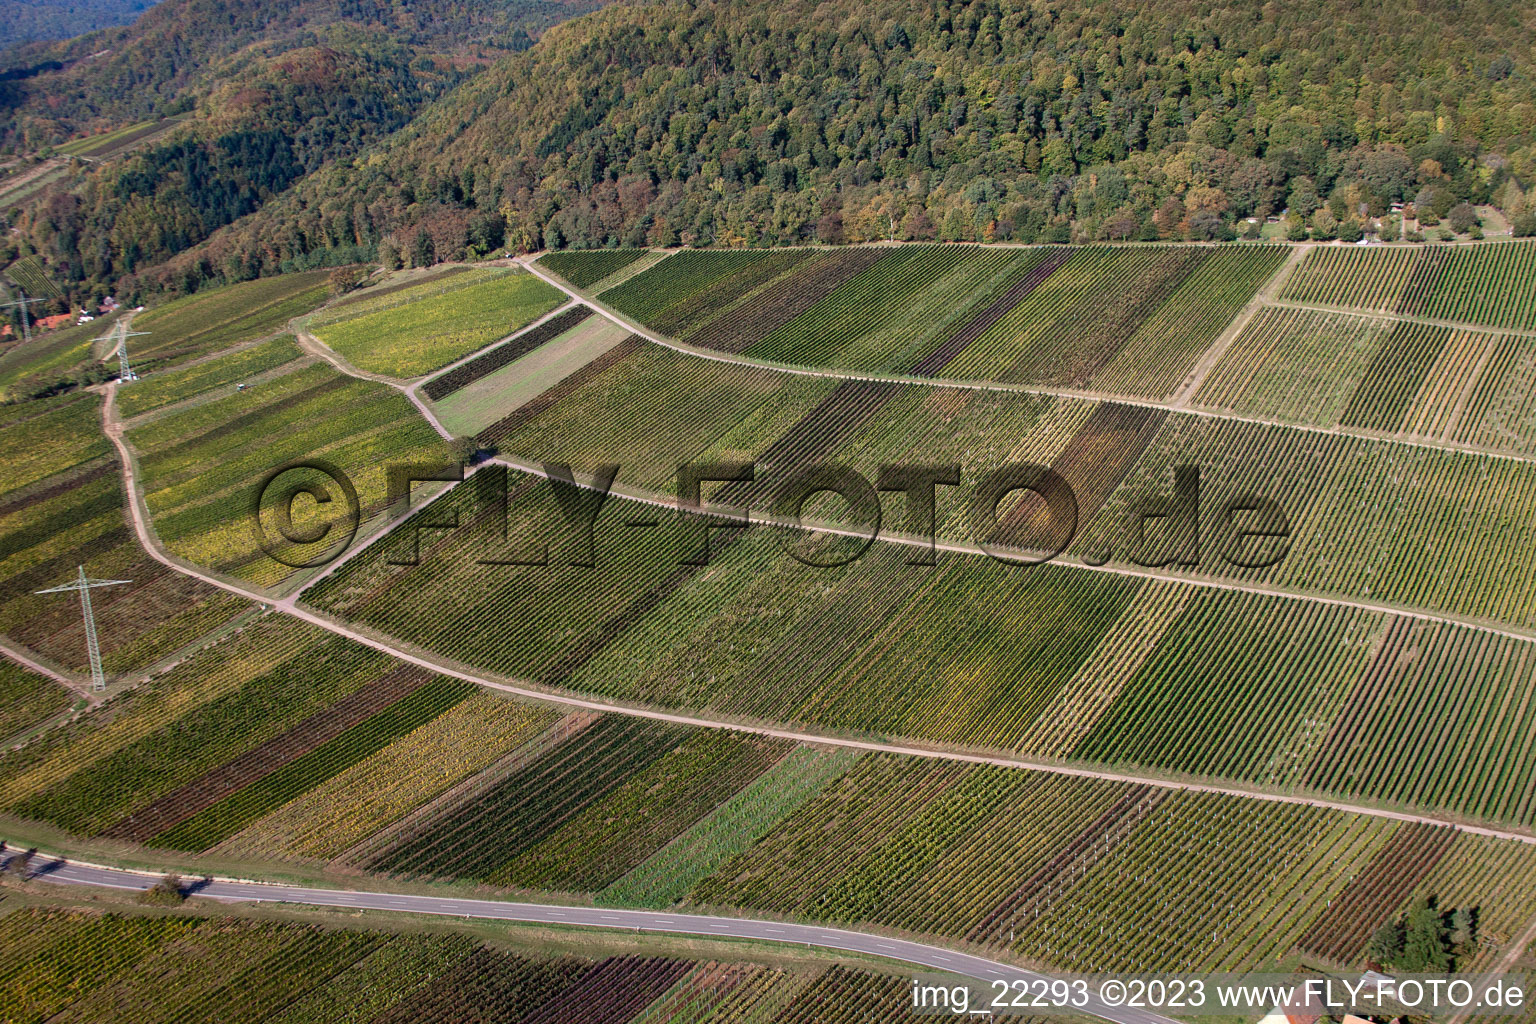 Albersweiler dans le département Rhénanie-Palatinat, Allemagne du point de vue du drone